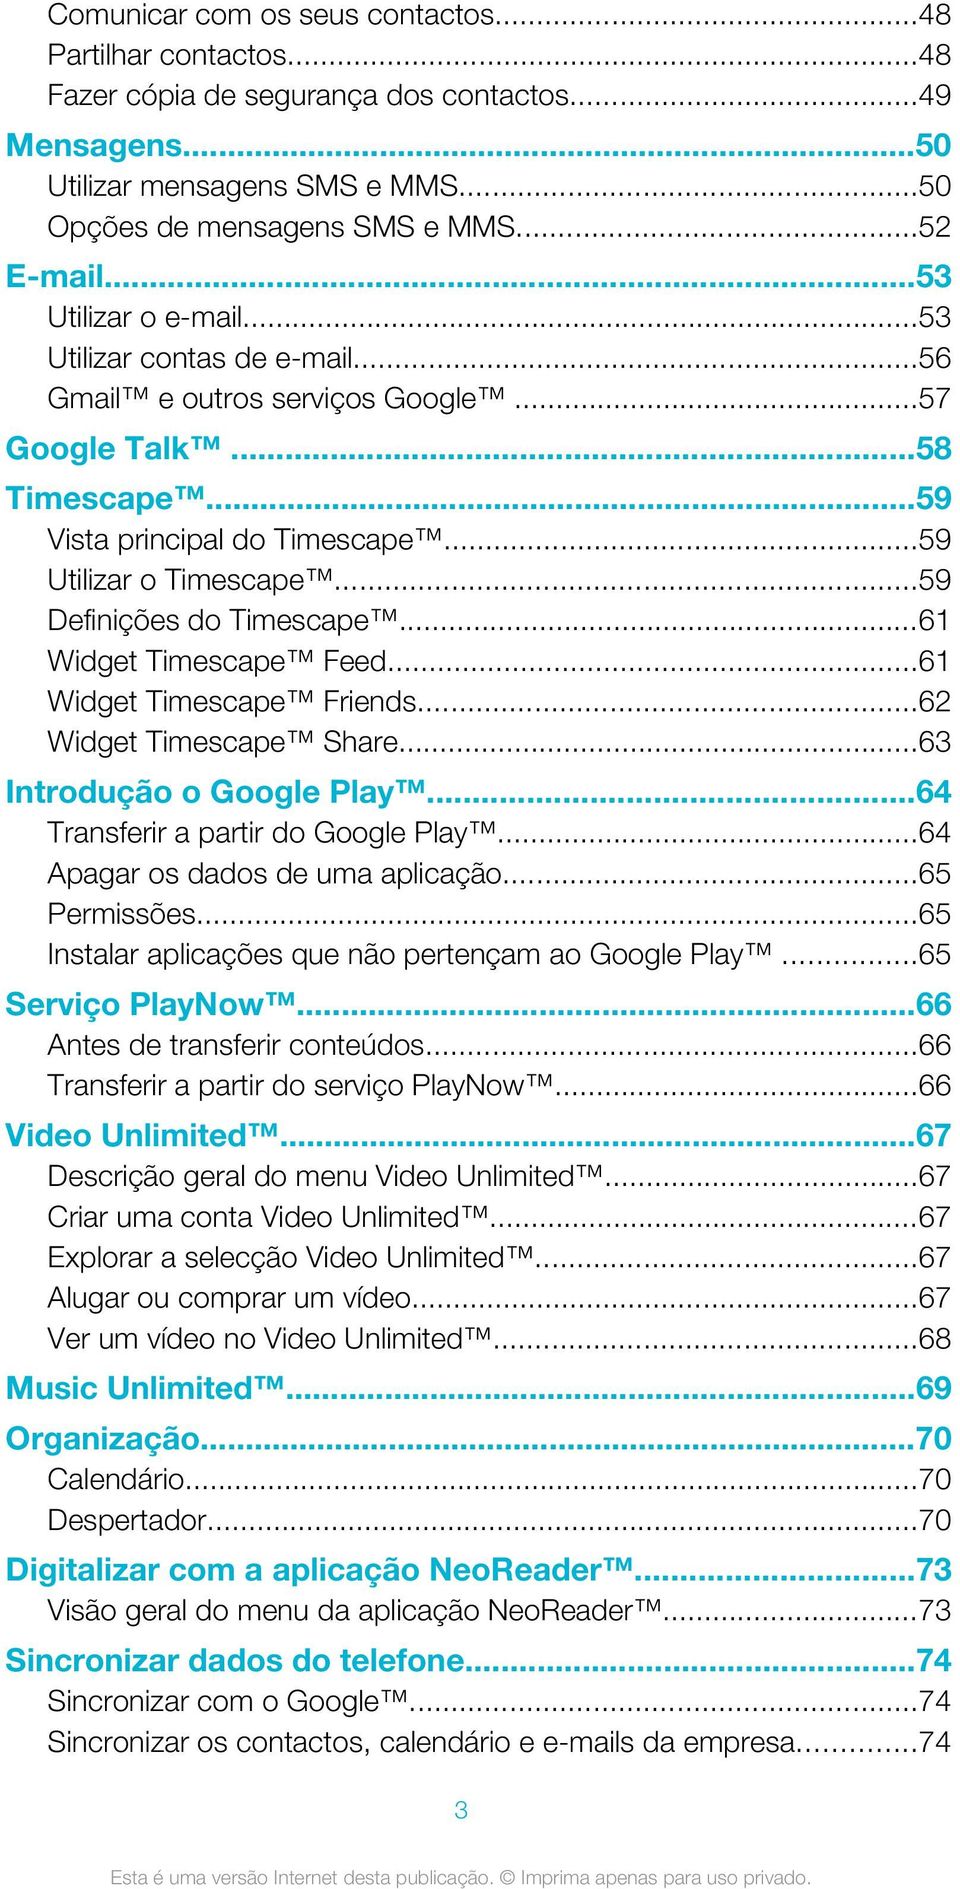 ..59 Definições do Timescape...61 Widget Timescape Feed...61 Widget Timescape Friends...62 Widget Timescape Share...63 Introdução o Google Play...64 Transferir a partir do Google Play.